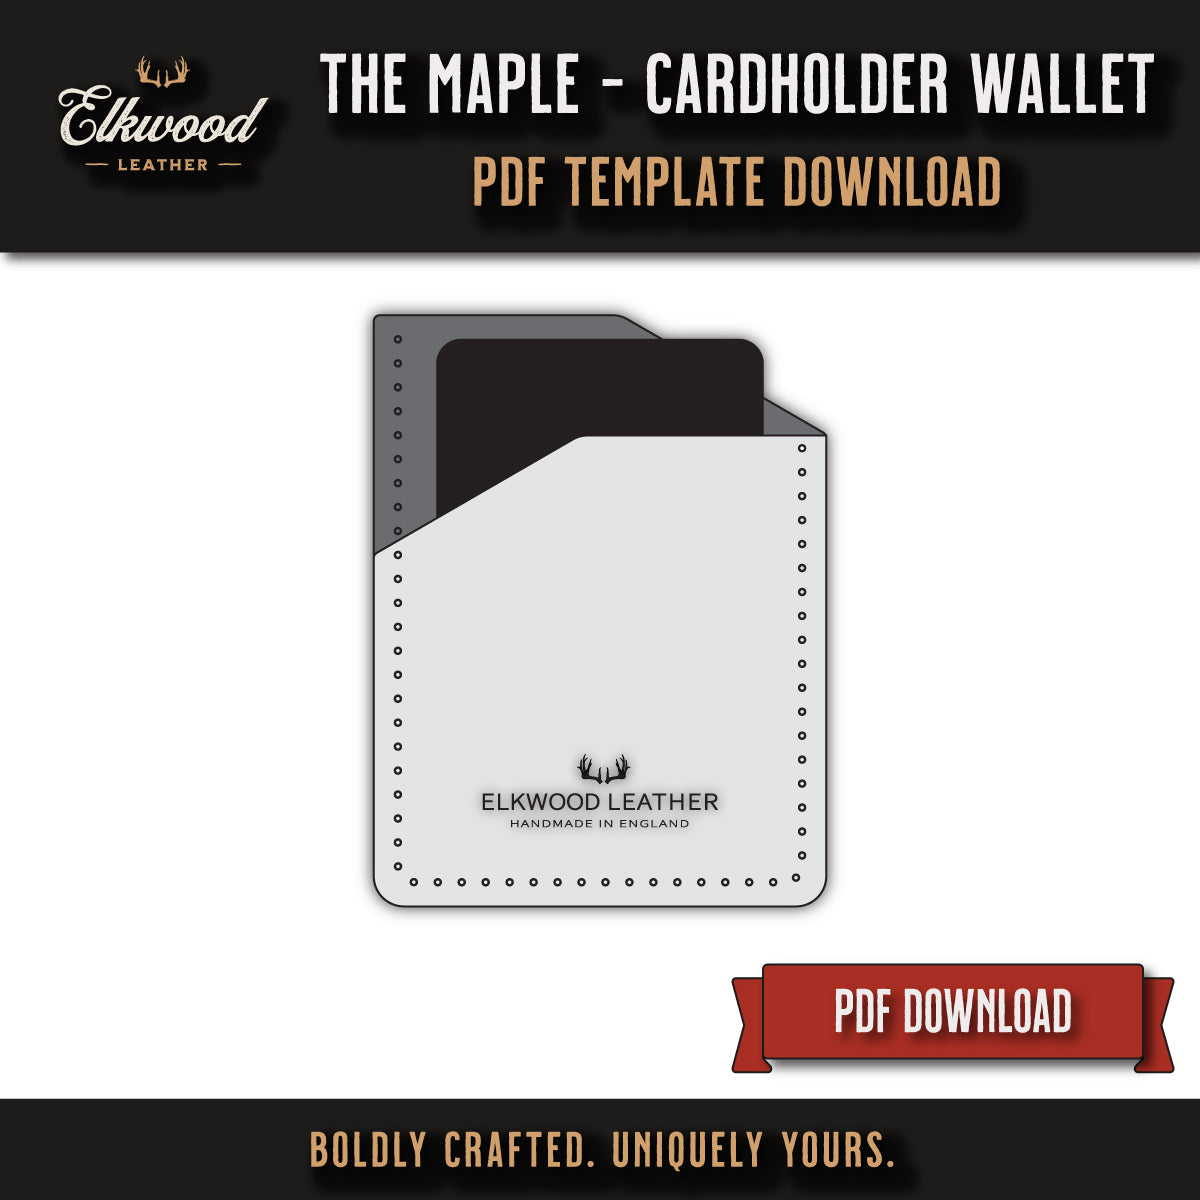 Elkwood Leather - The Maple Cardholder wallet digital download pdf template